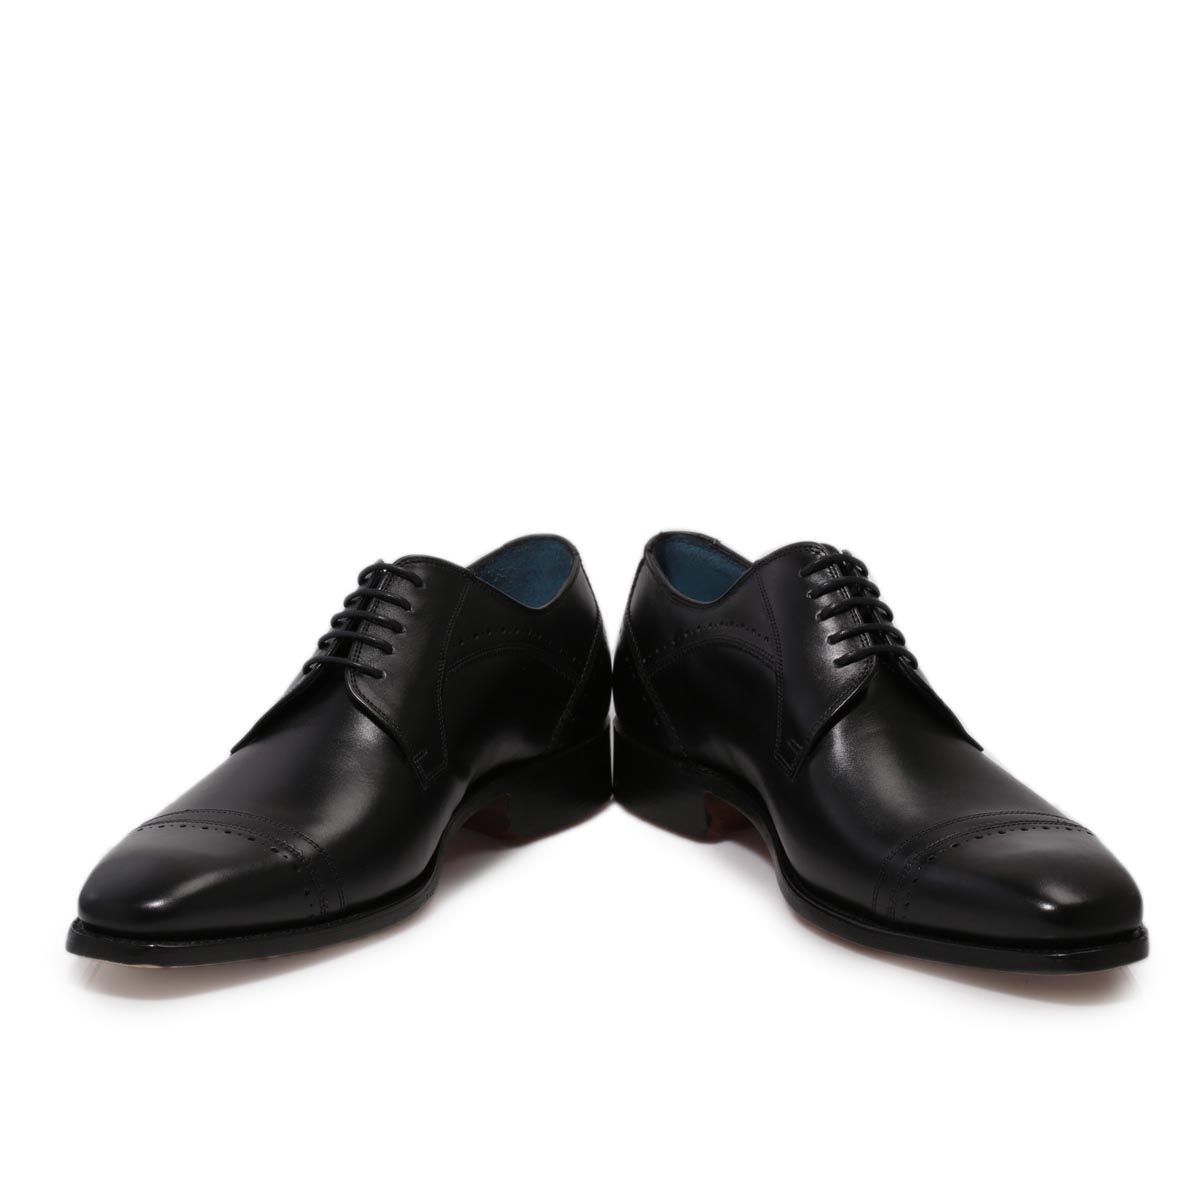 barker blake oxford black leather smart lace up mens formal shoes size 8 VSXXHPL